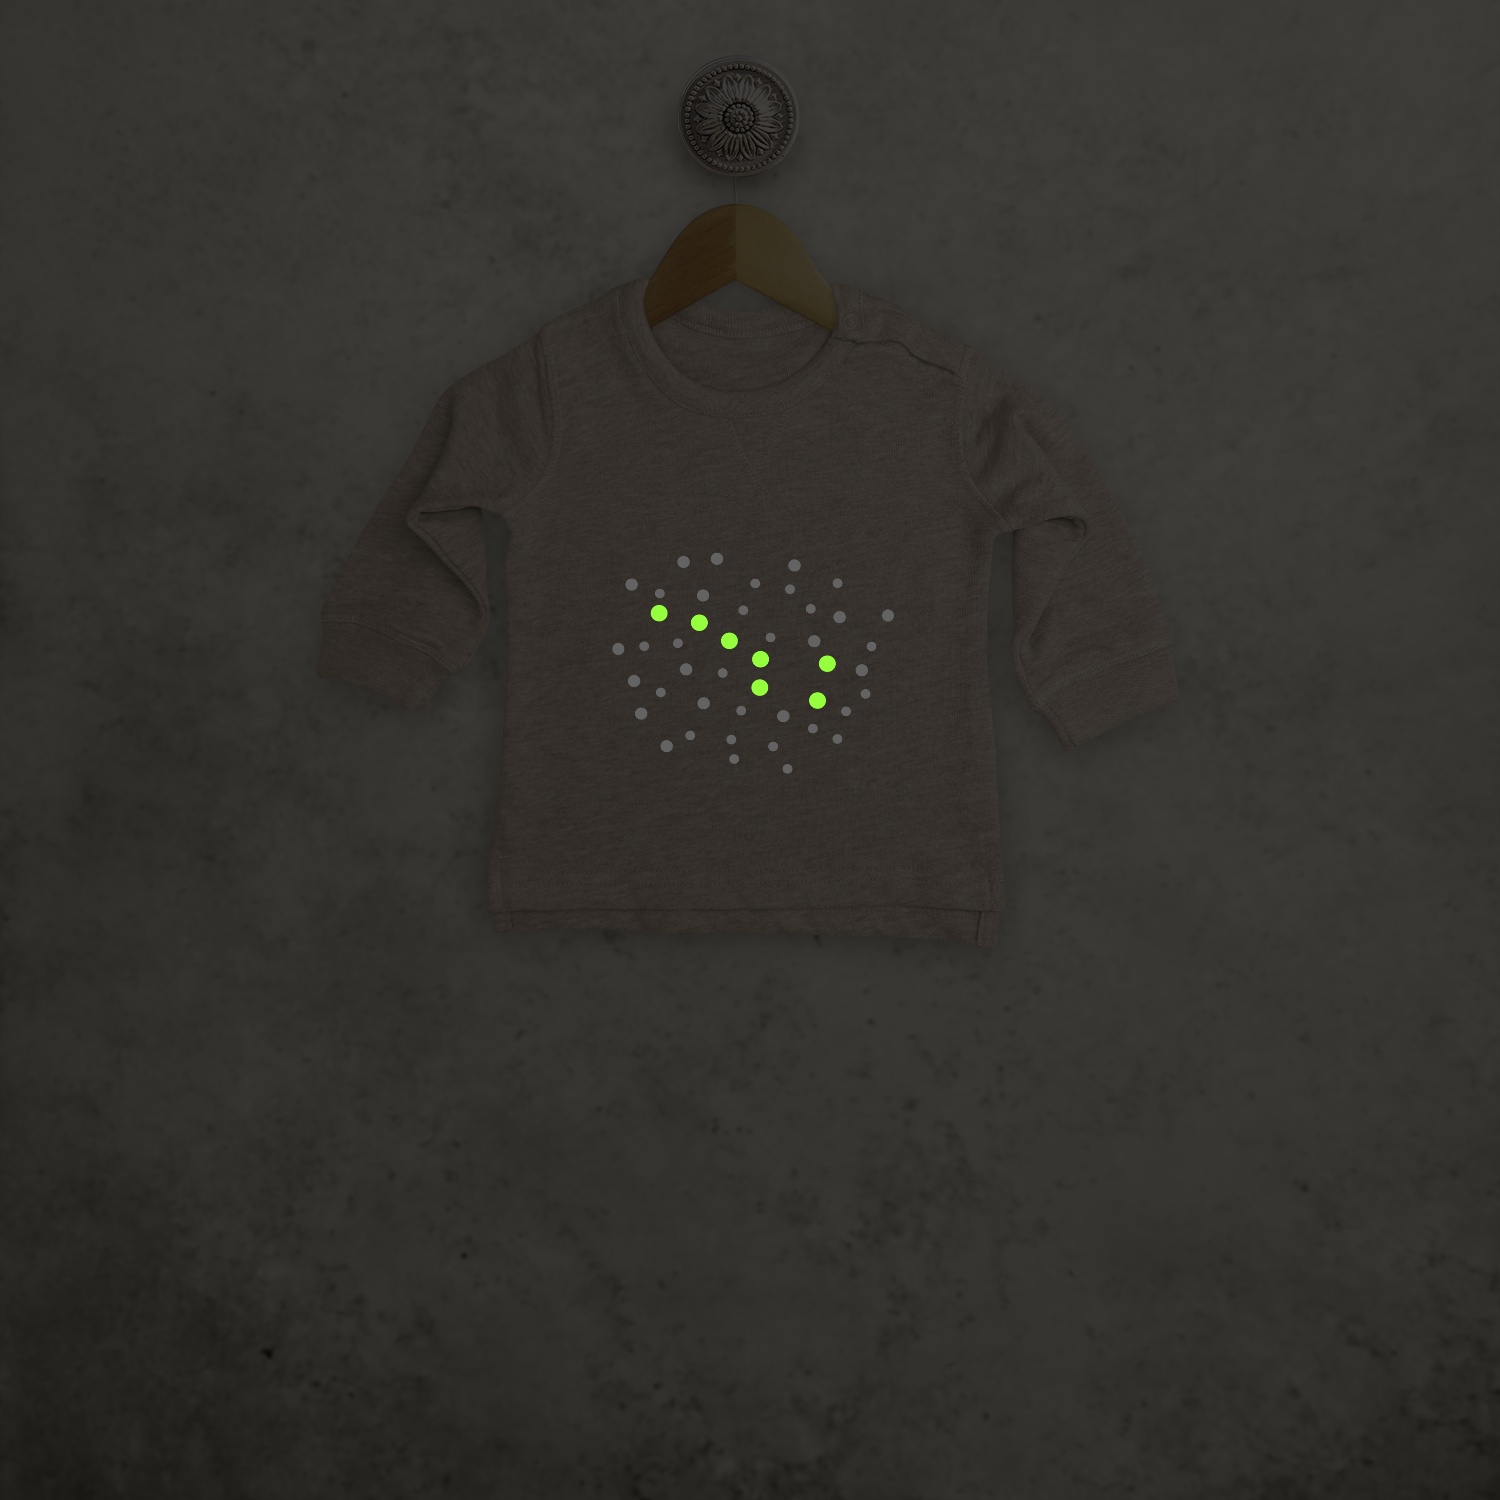 Little bear glow in the dark baby sweater